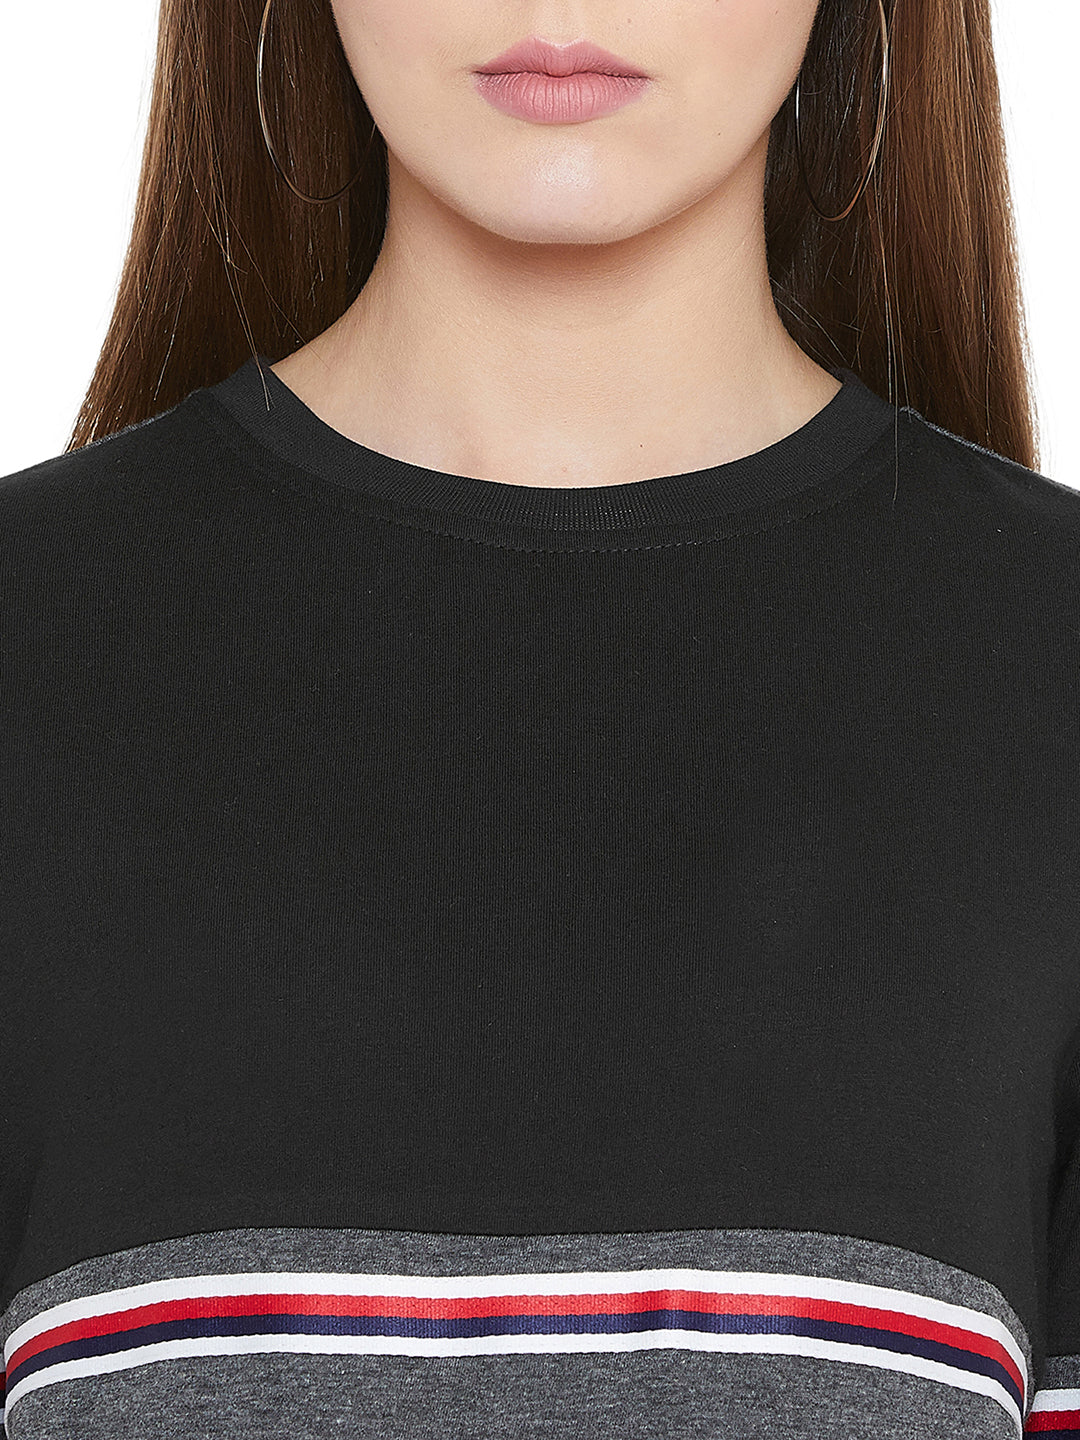 Black/Anthramelange Full Sleeves Color Block Taping Full Sleeves T-Shirt